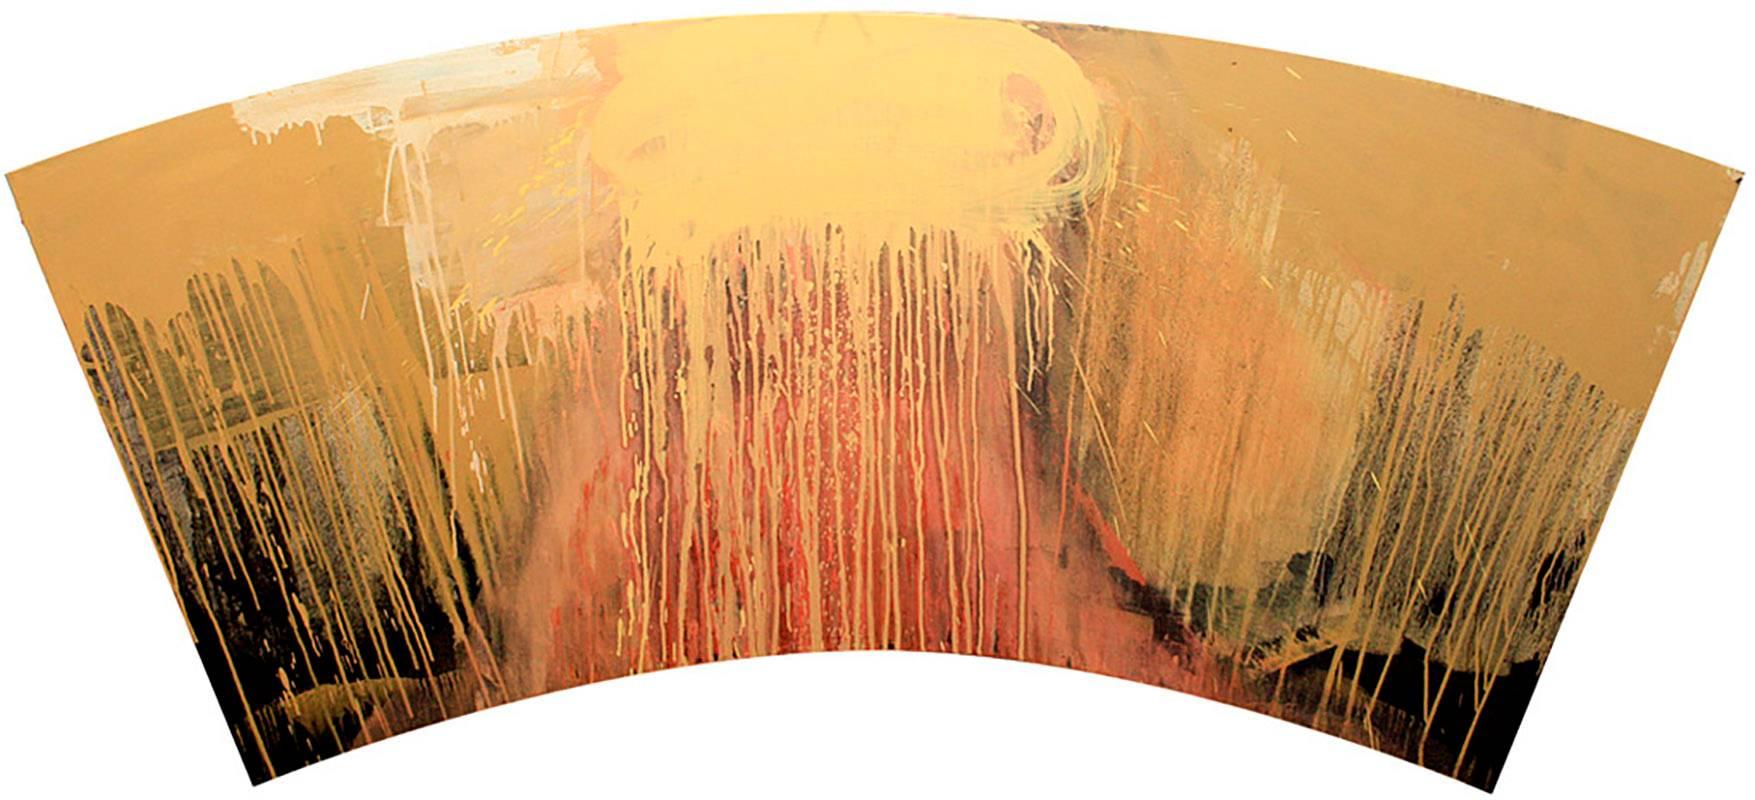 Christopher Engel Abstract Painting – Dreamer ( zeitgenössische, abstrakte Malerei in brauner, erdfarbener Palette)